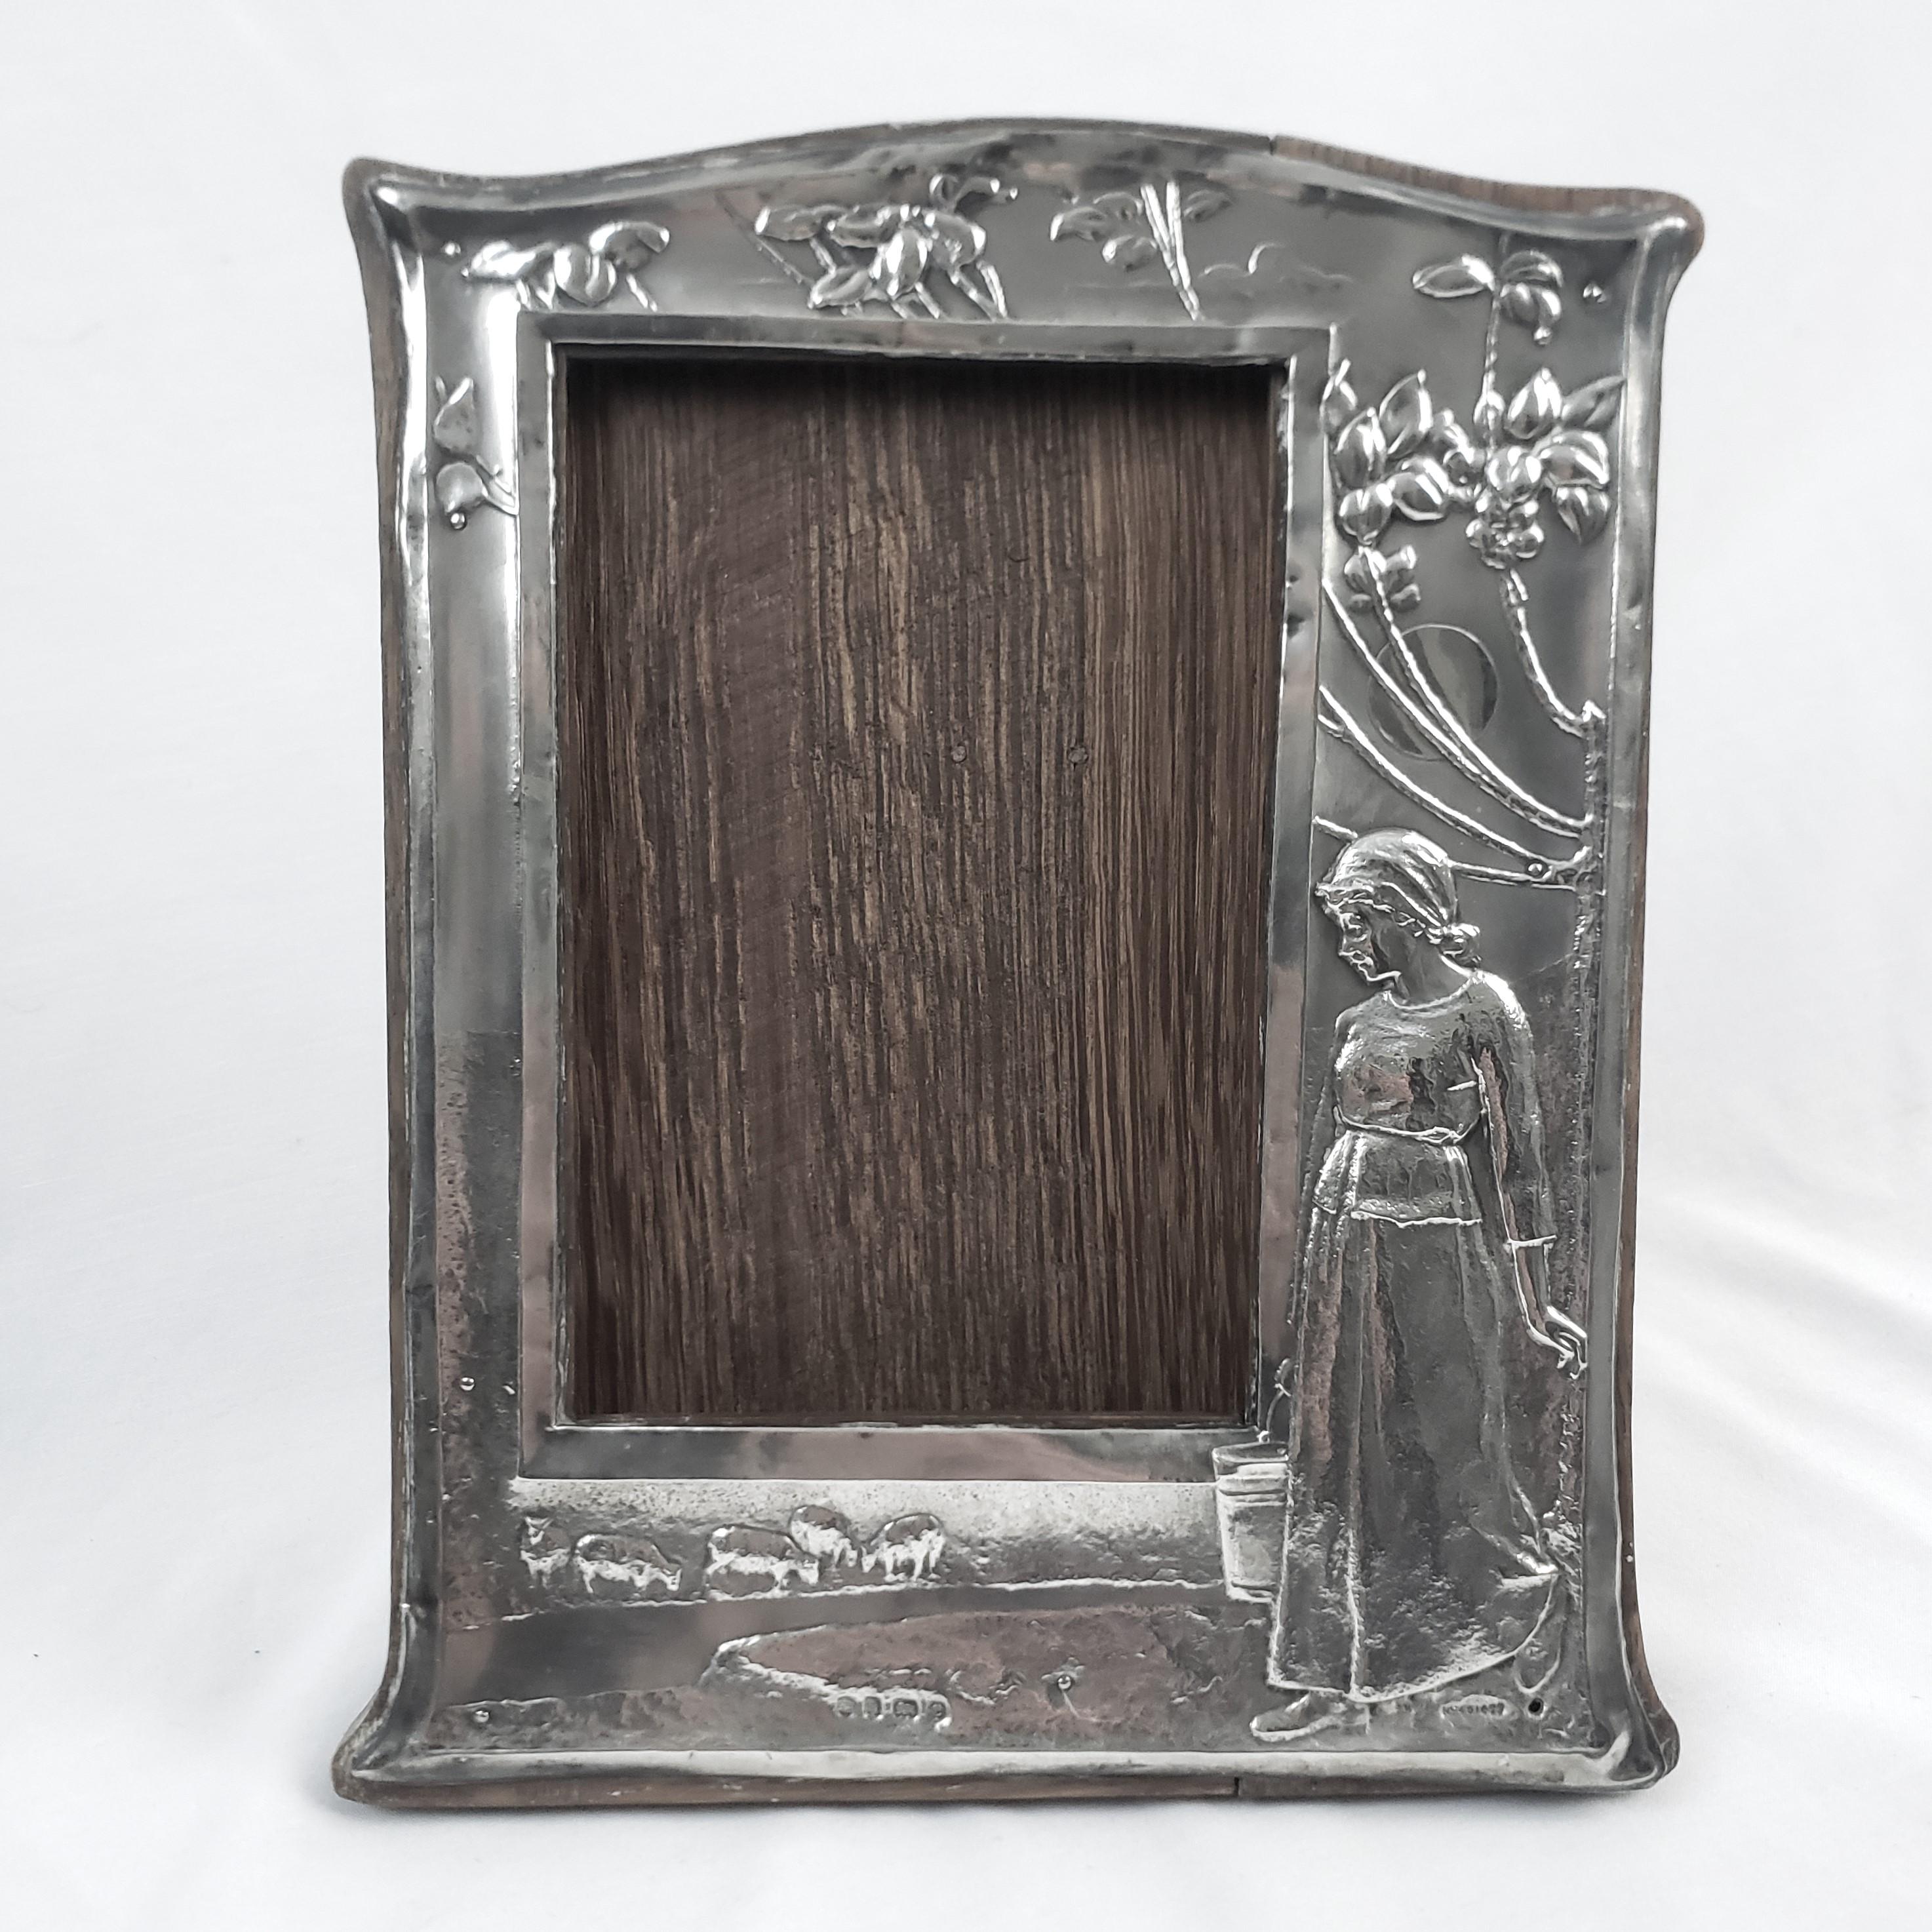 Dieser antike Bild- oder Spiegelrahmen wurde von der bekannten Charles S. Green Company aus England etwa 1907 im Stil des Arts and Crafts hergestellt. Die Vorderseite des Rahmens besteht aus Sterlingsilber mit Repousse-Dekor, das eine Frau in einer